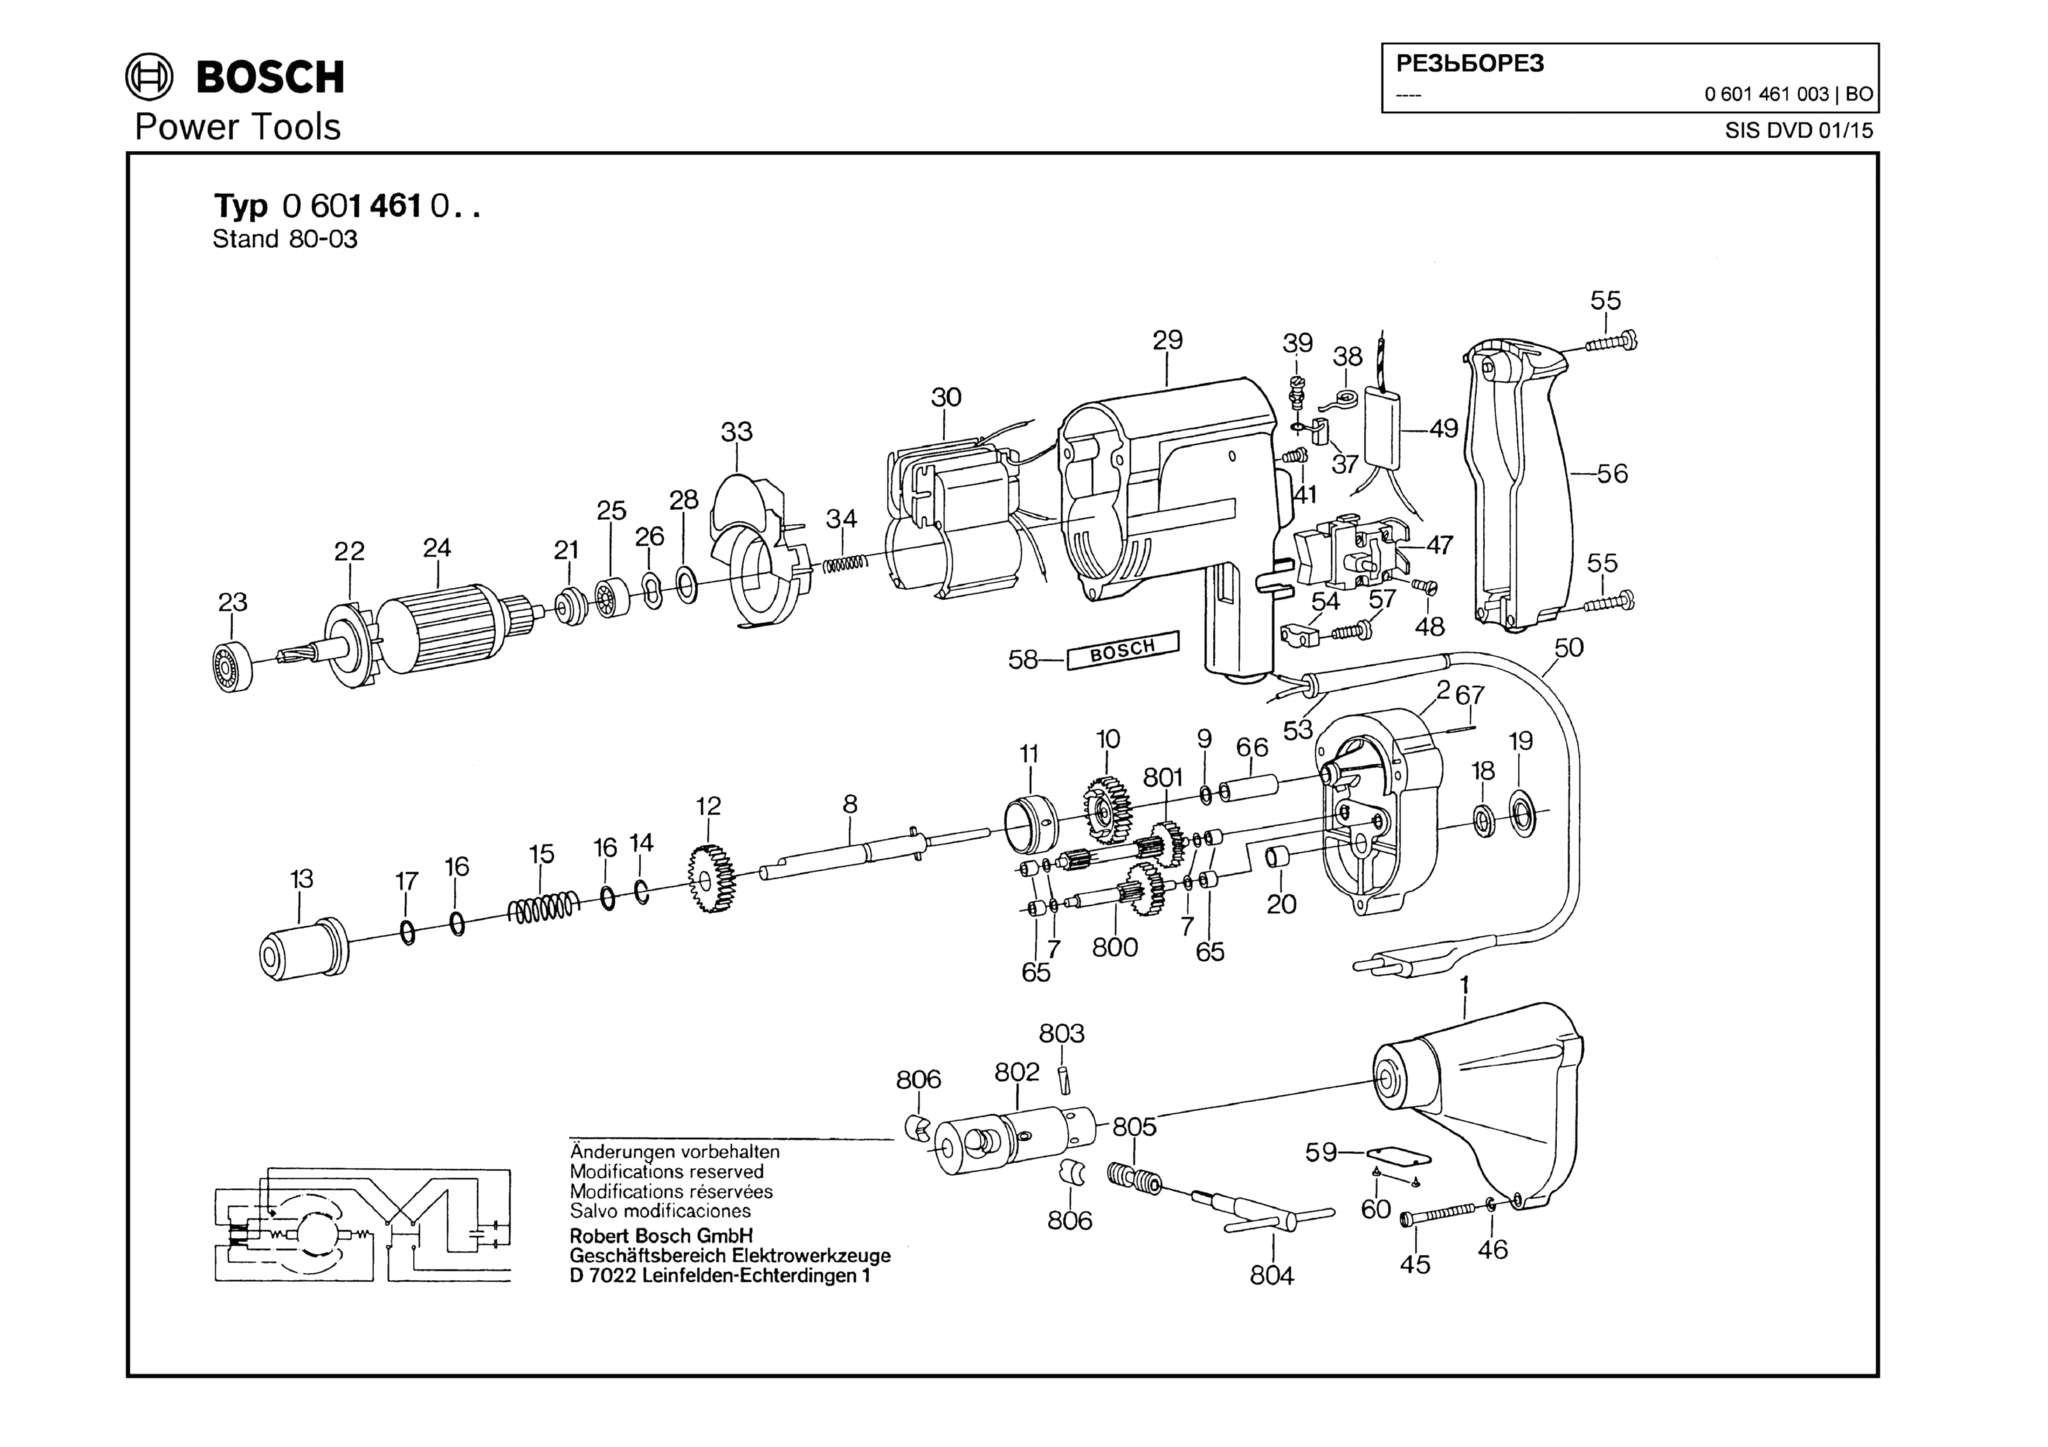 Запчасти, схема и деталировка Bosch (ТИП 0601461003)